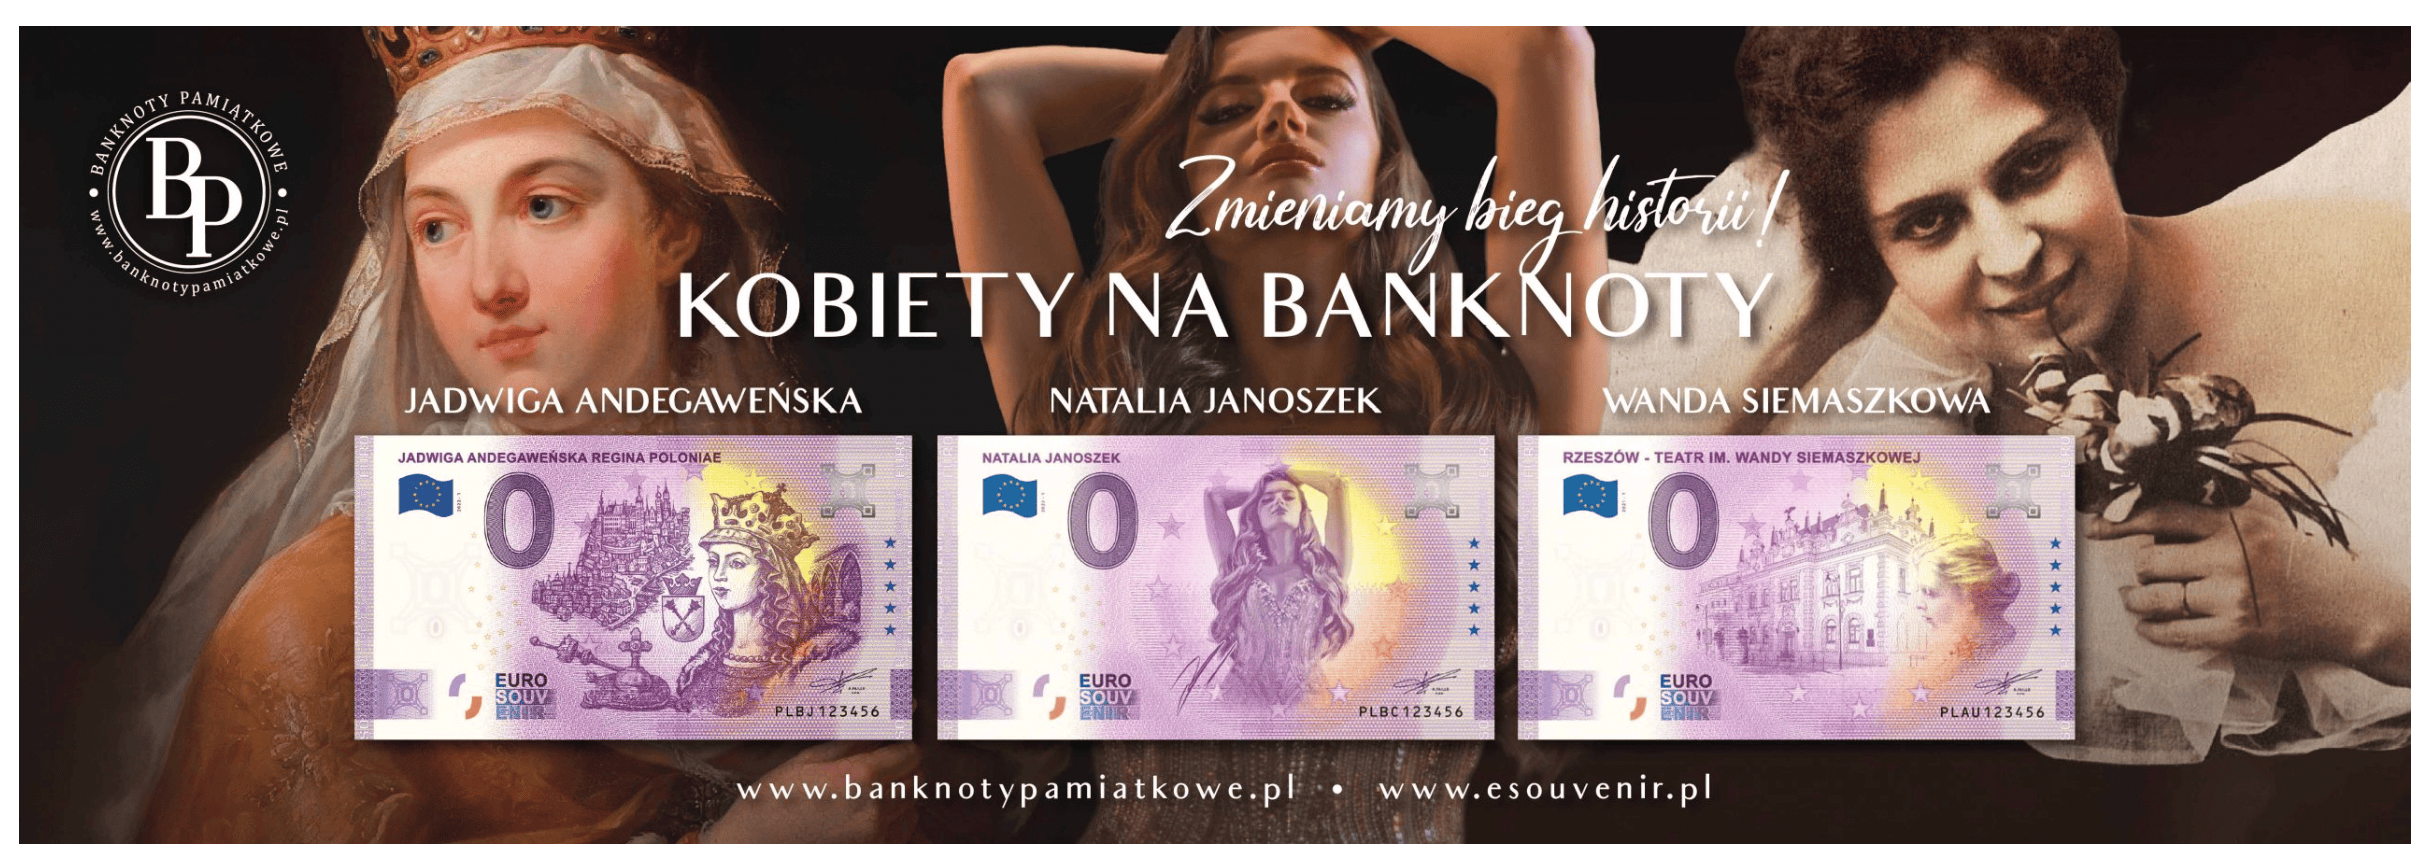 Banknoty pamiątkowe – Euro z Natalią Janoszek